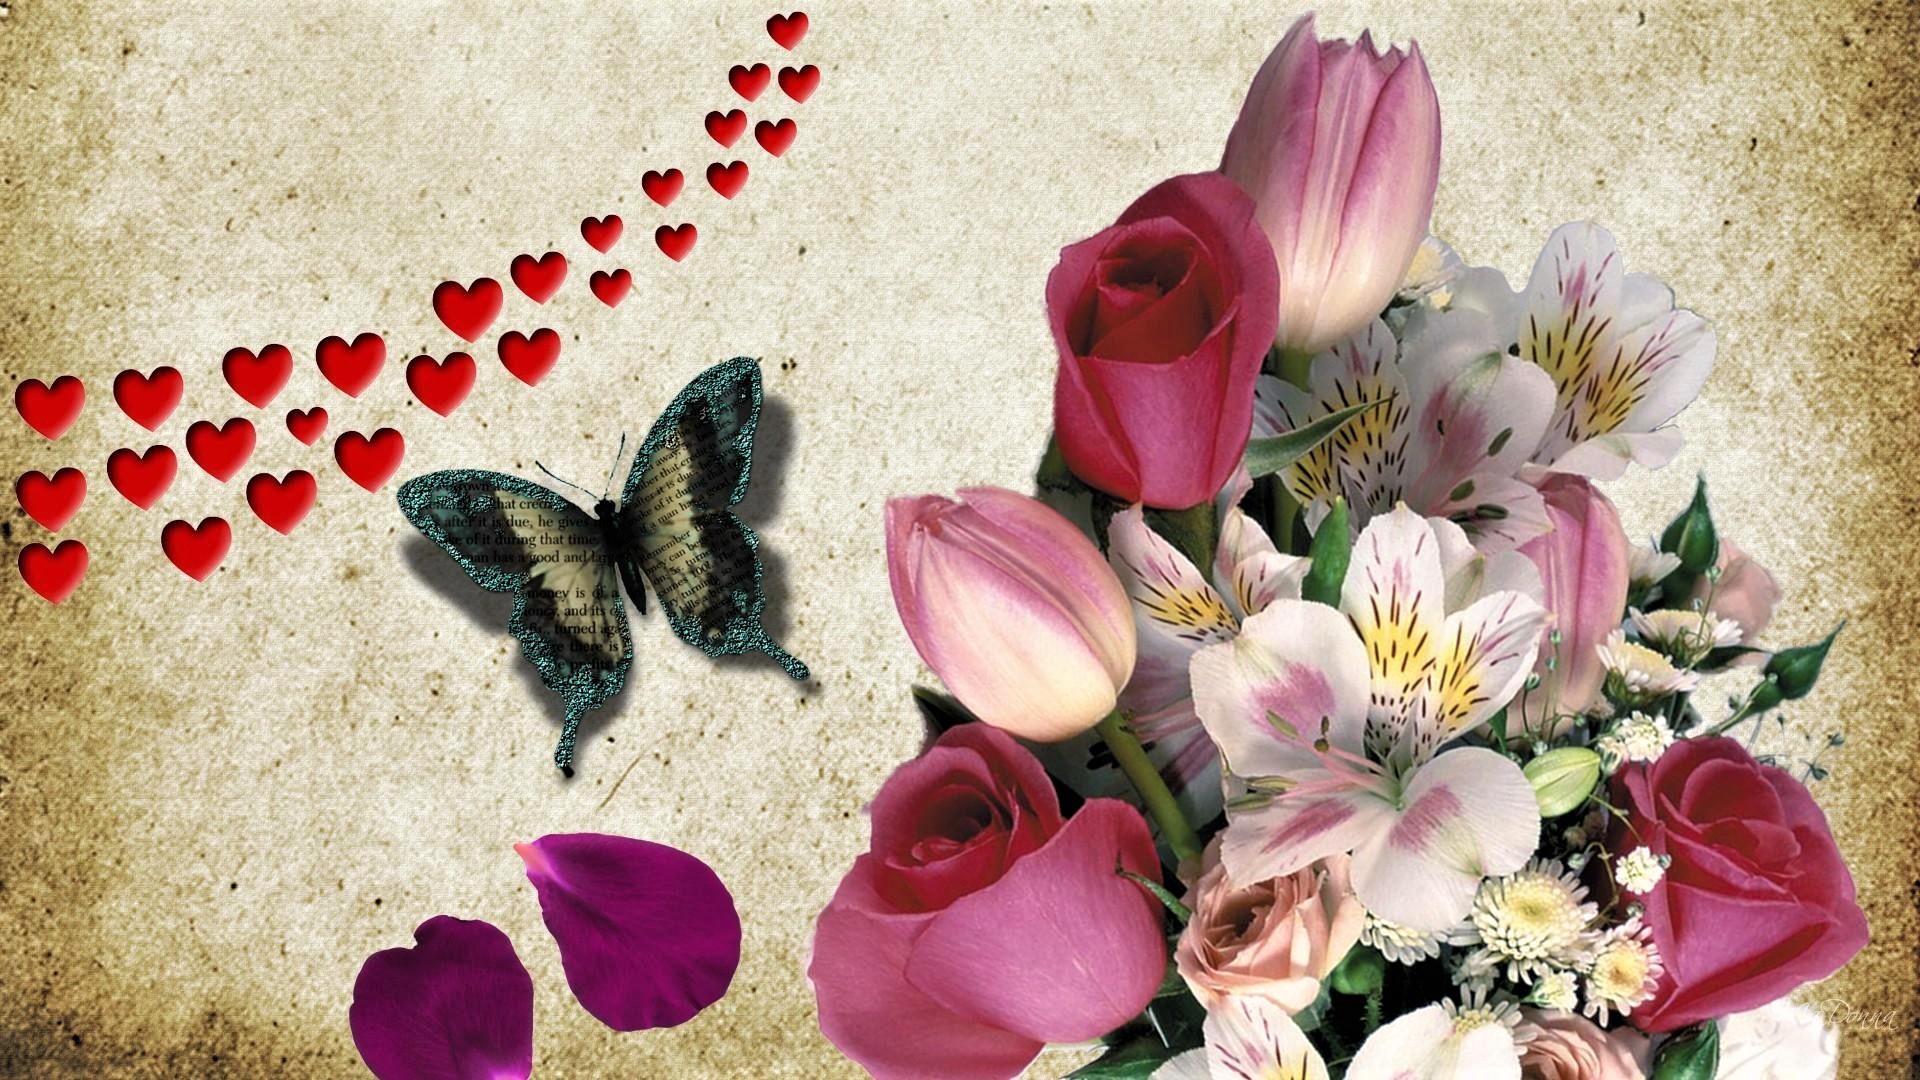 Скачать обои бесплатно Цветок, Бабочка, Сердце, Художественные, Флауэрсы картинка на рабочий стол ПК